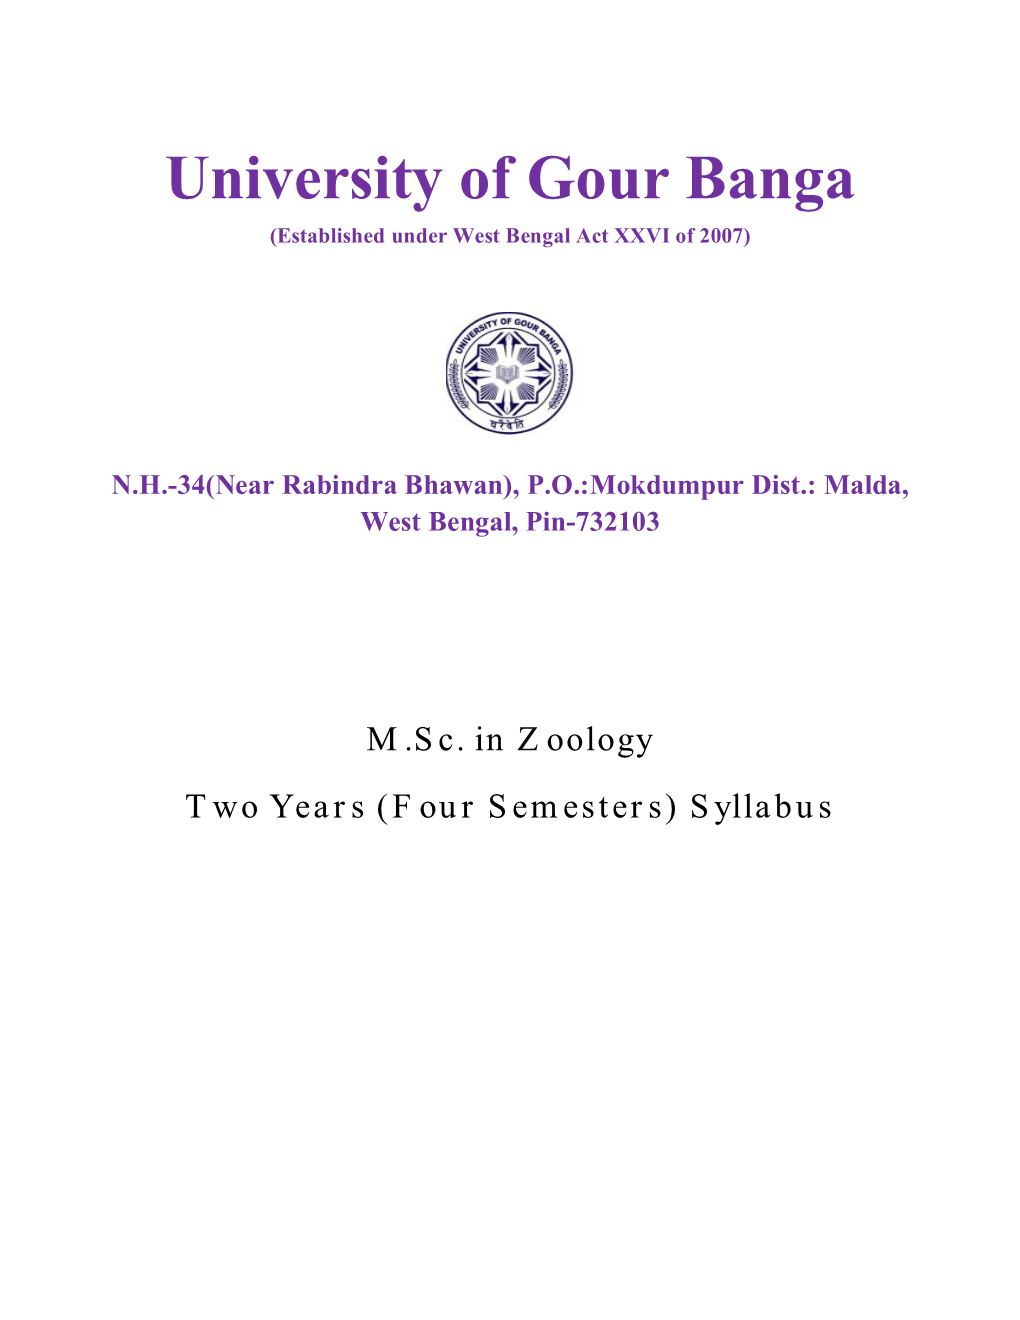 University of Gour Banga (Established Under West Bengal Act XXVI of 2007)